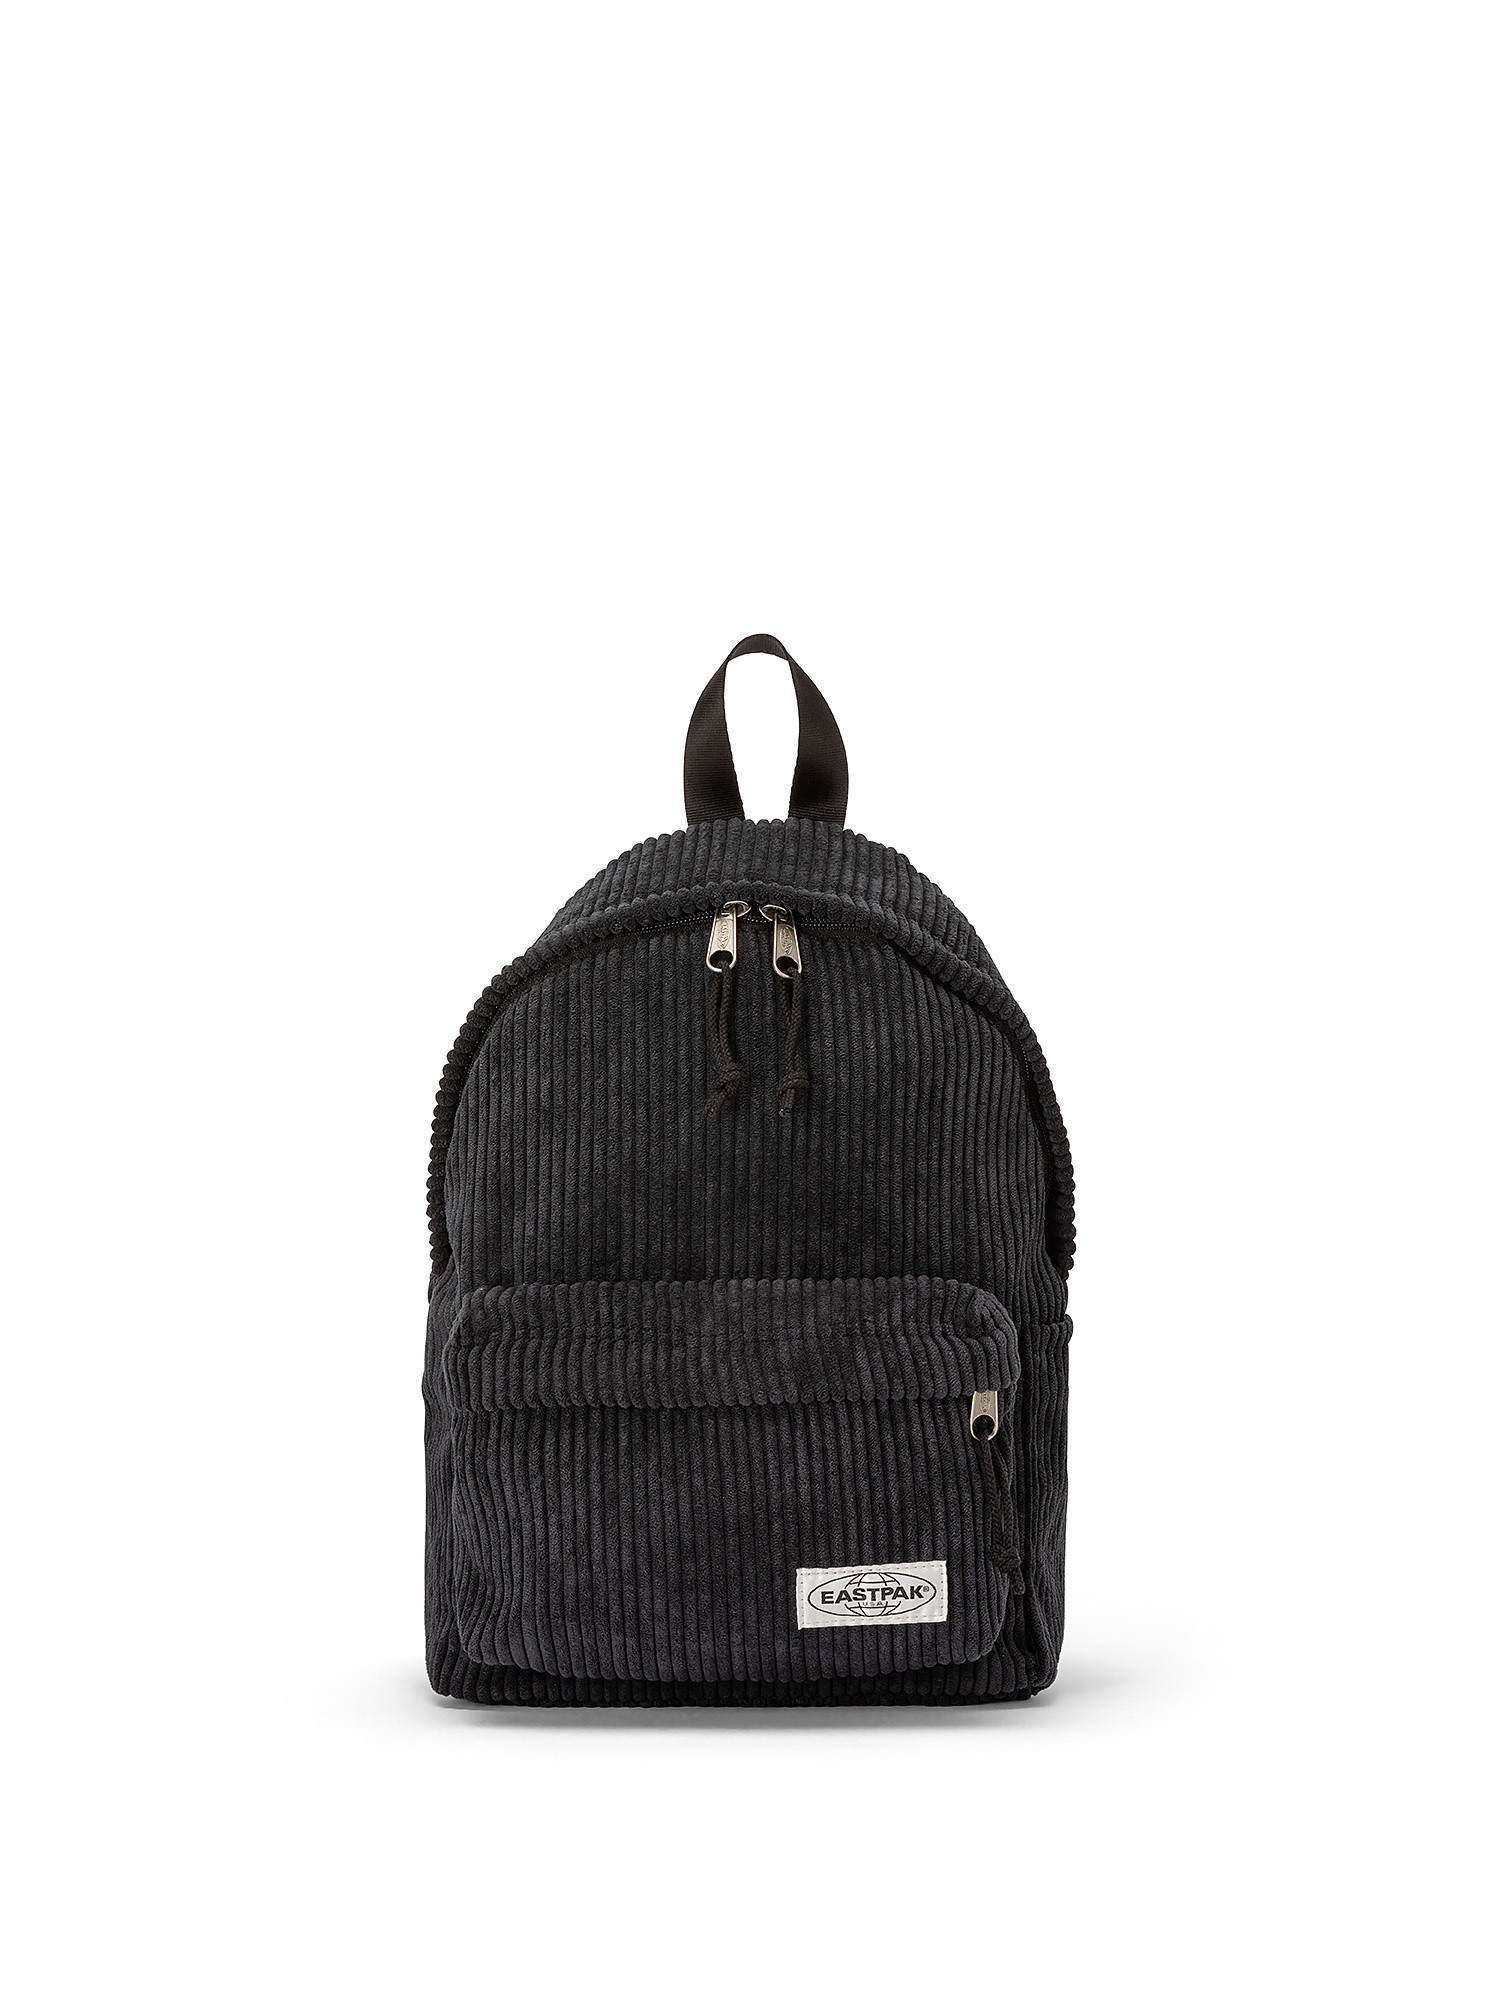 Mini backpack with tablet pocket, Black, large image number 0